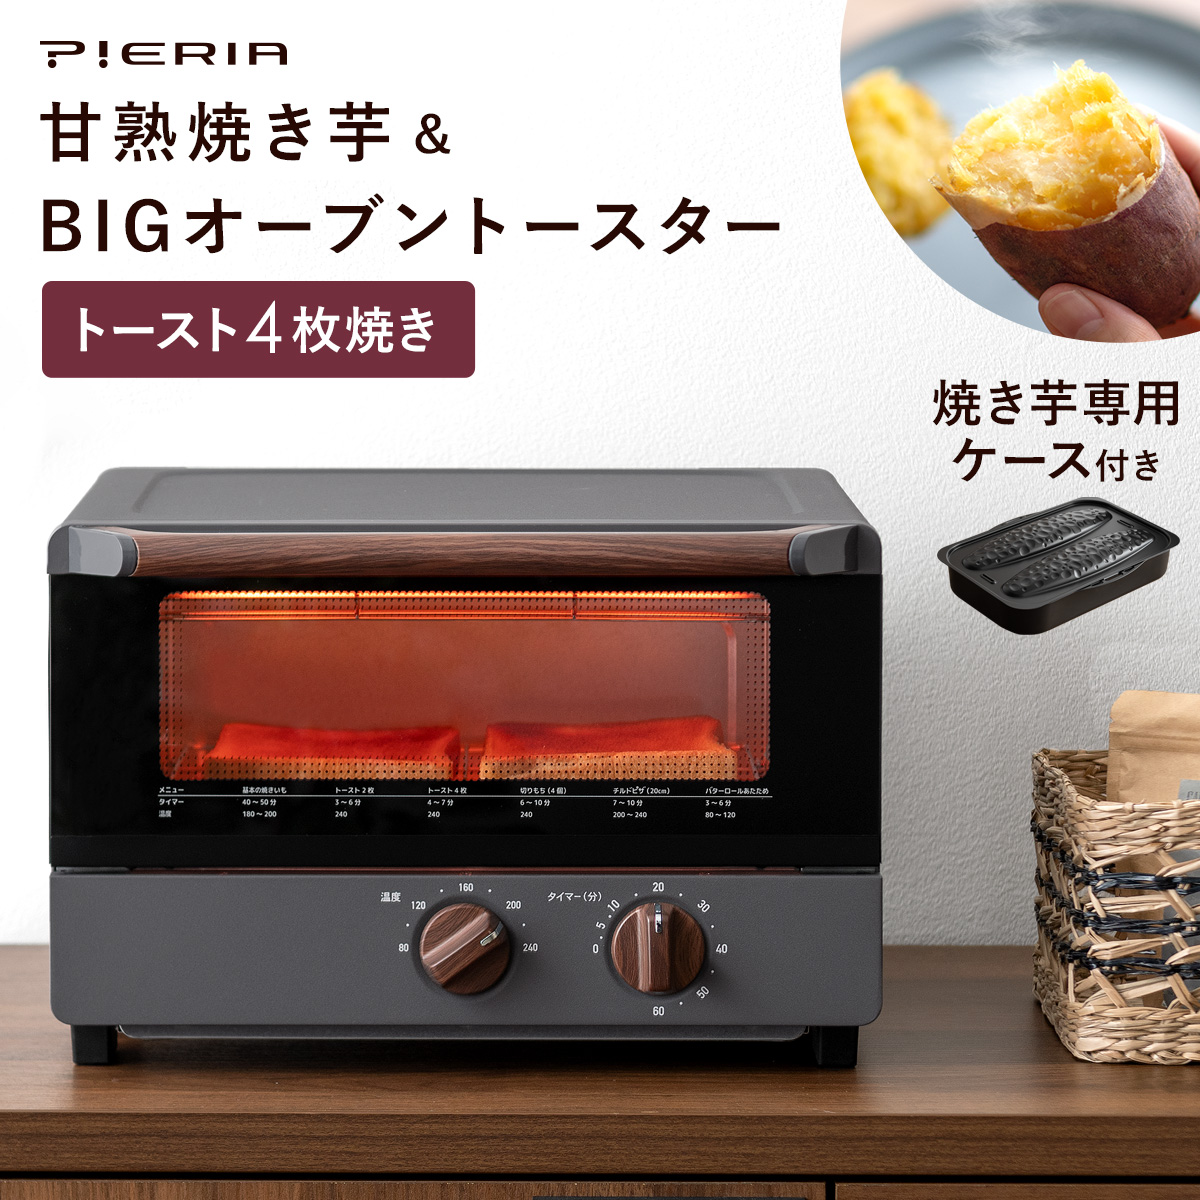 PIERIA(ピエリア)甘熟焼き芋BIGオーブントースター 【公式】 エア・リゾーム インテリア・家具通販